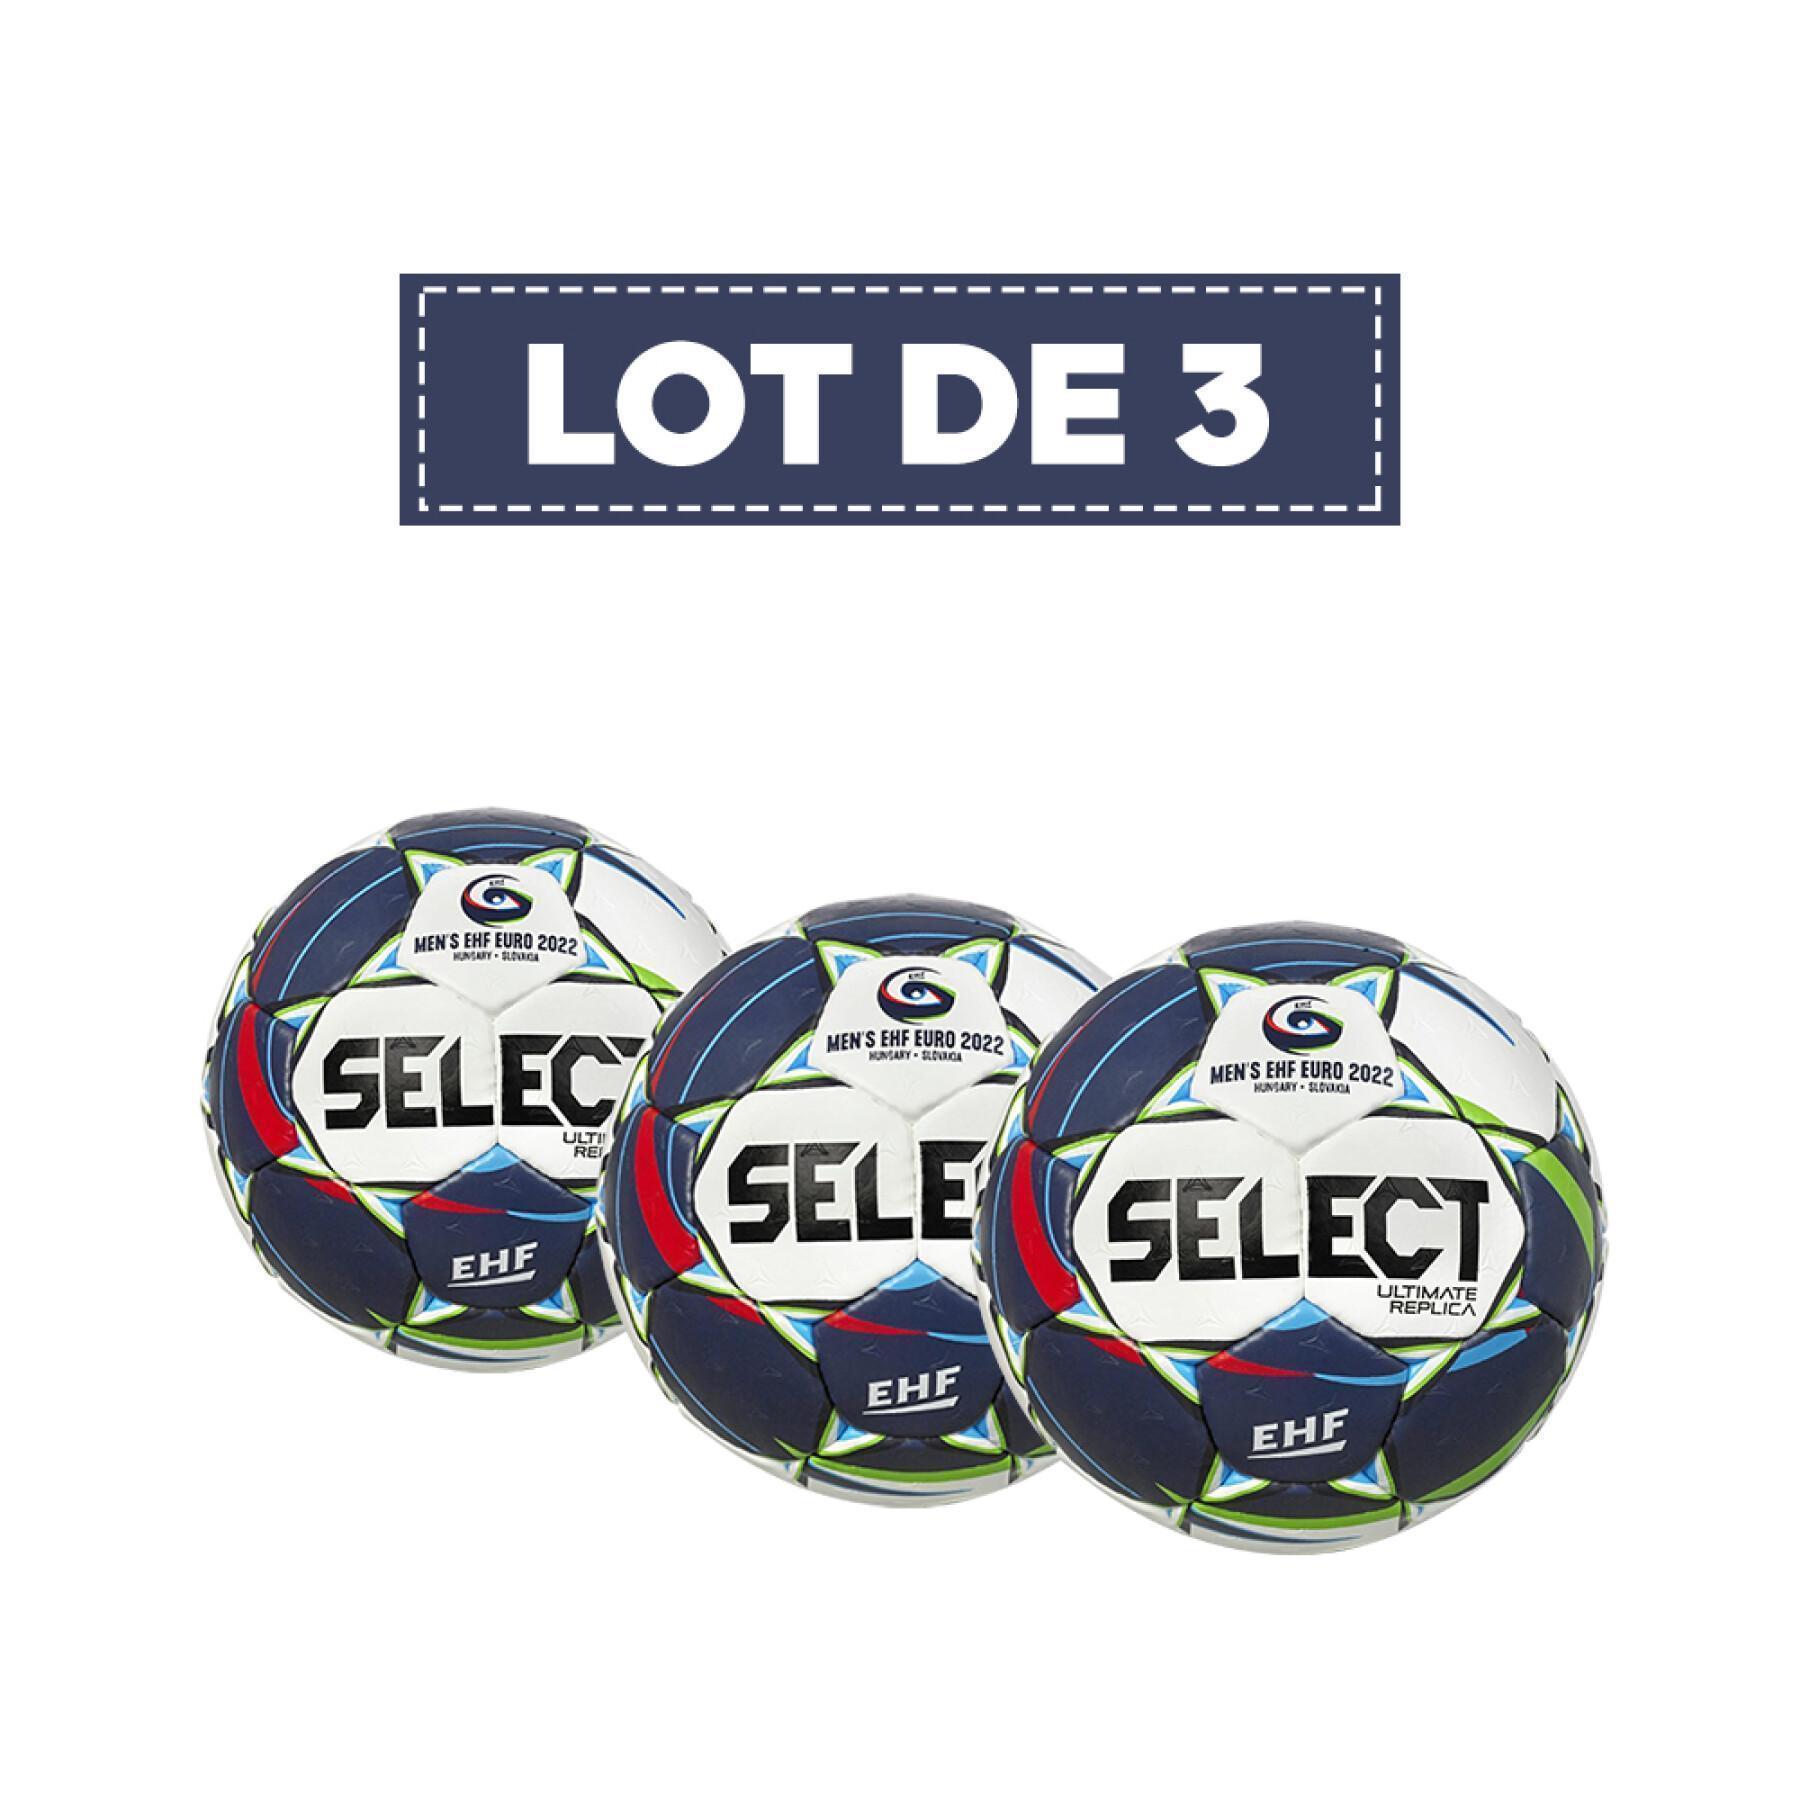 Set of 3 balloons Select Euro EHF 2022 Replica